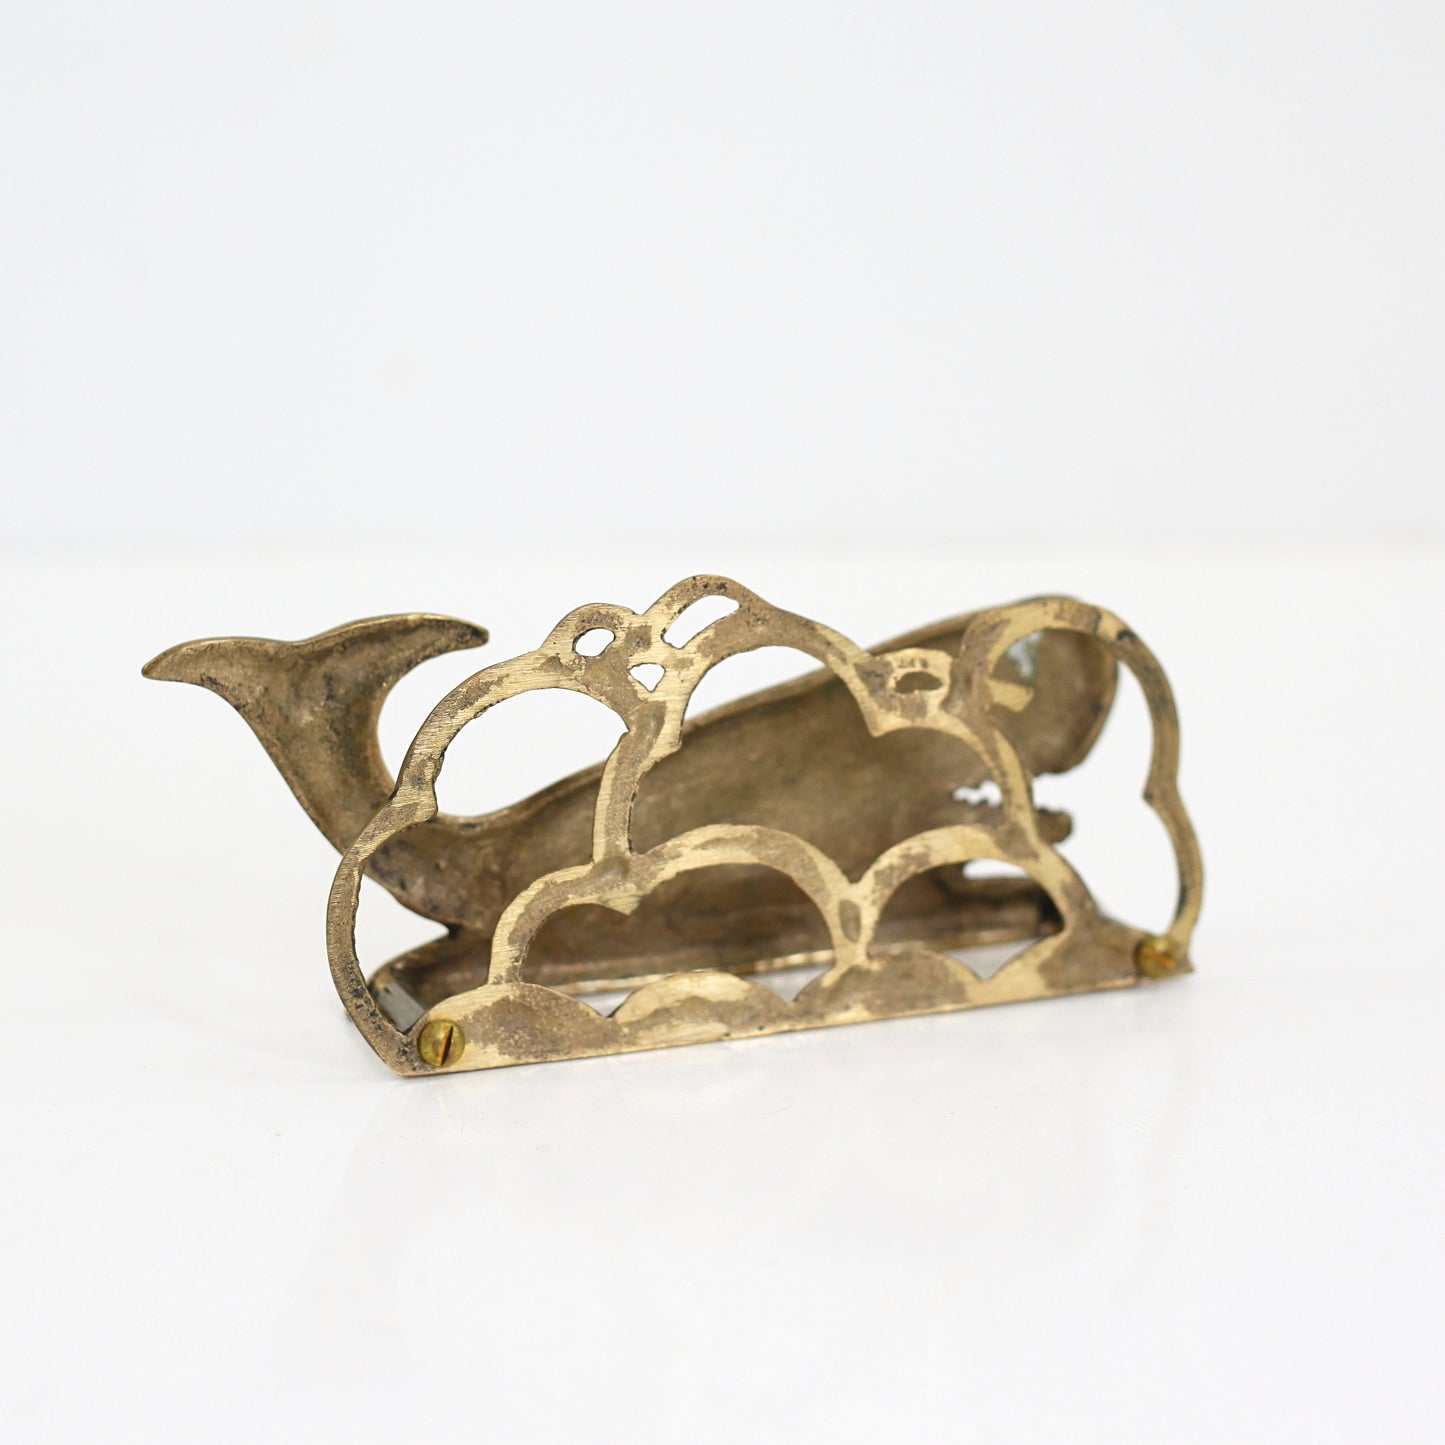 SOLD - Vintage Brass Whale Letter Holder